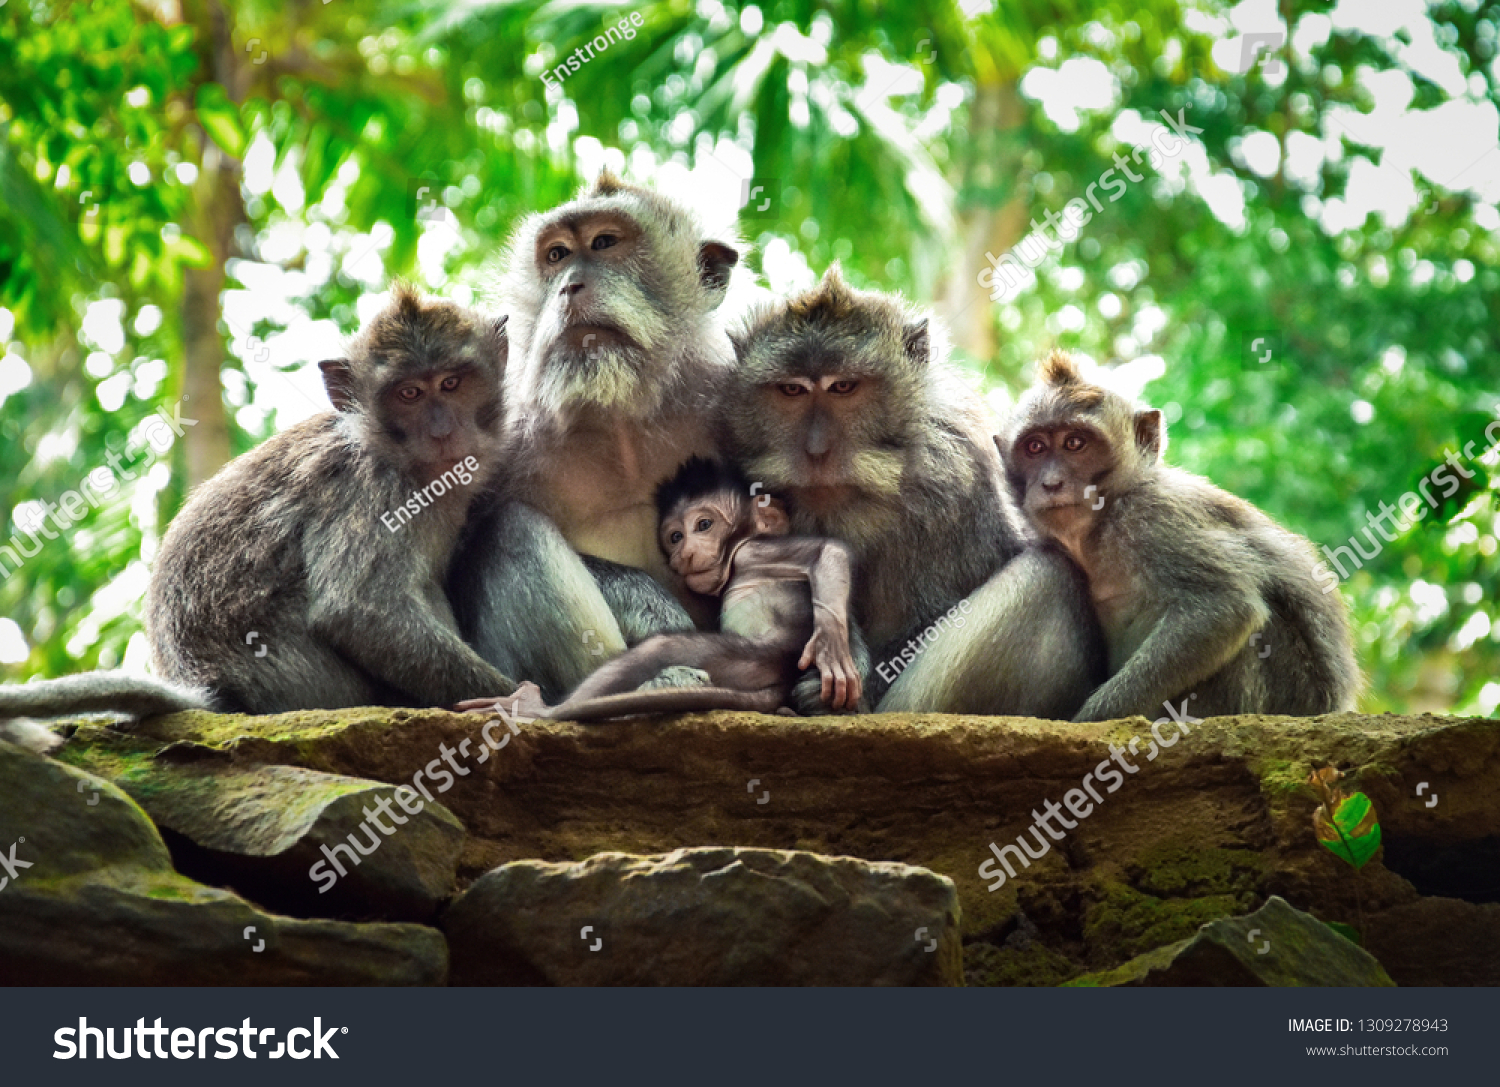 The family of monkeys with baby monkey. Monkey forest, Ubud, Bali, Indonesia. #1309278943